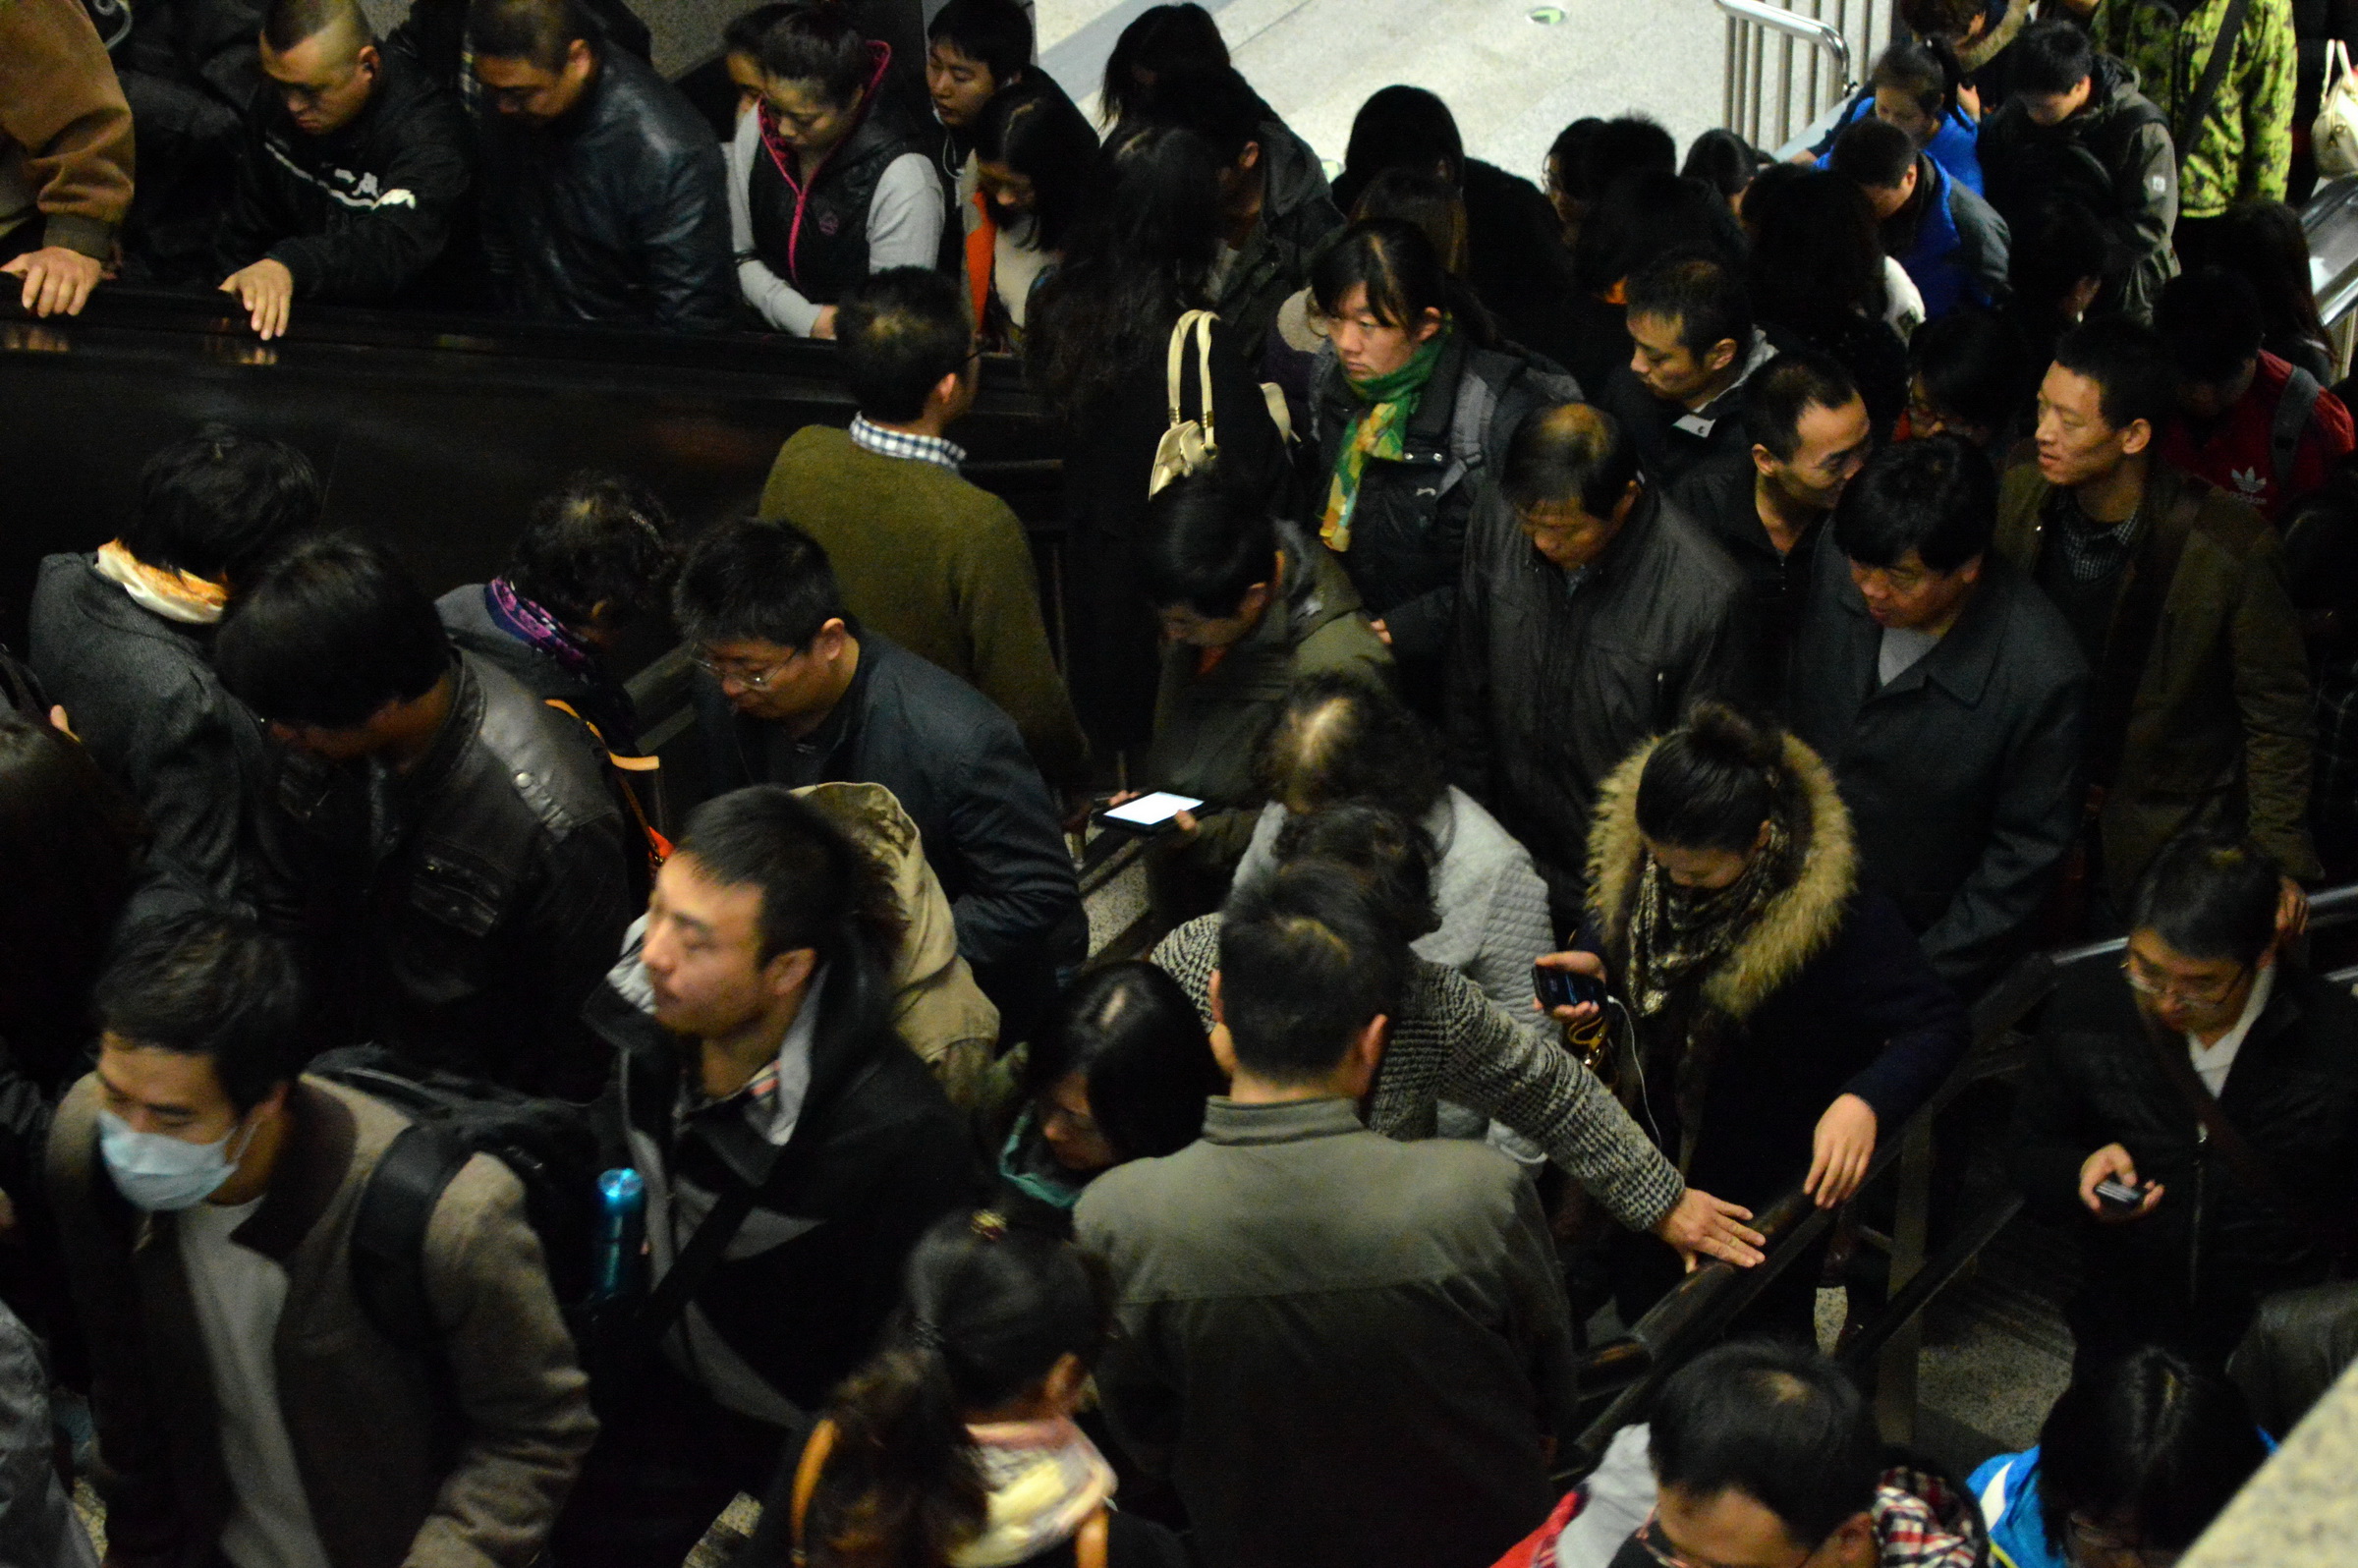 坐地铁北京上海哪里更拥挤?北京坐地铁的没有胖子,因为挤不上去